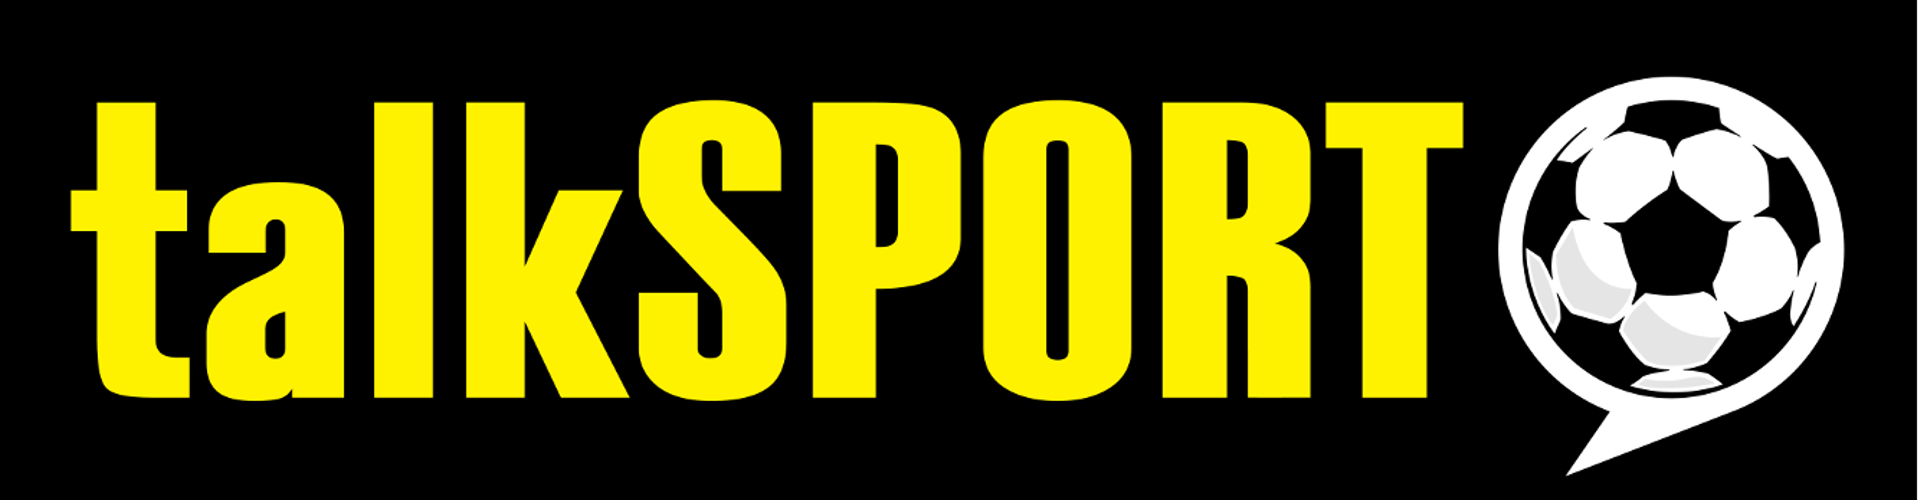 TalkSport logo